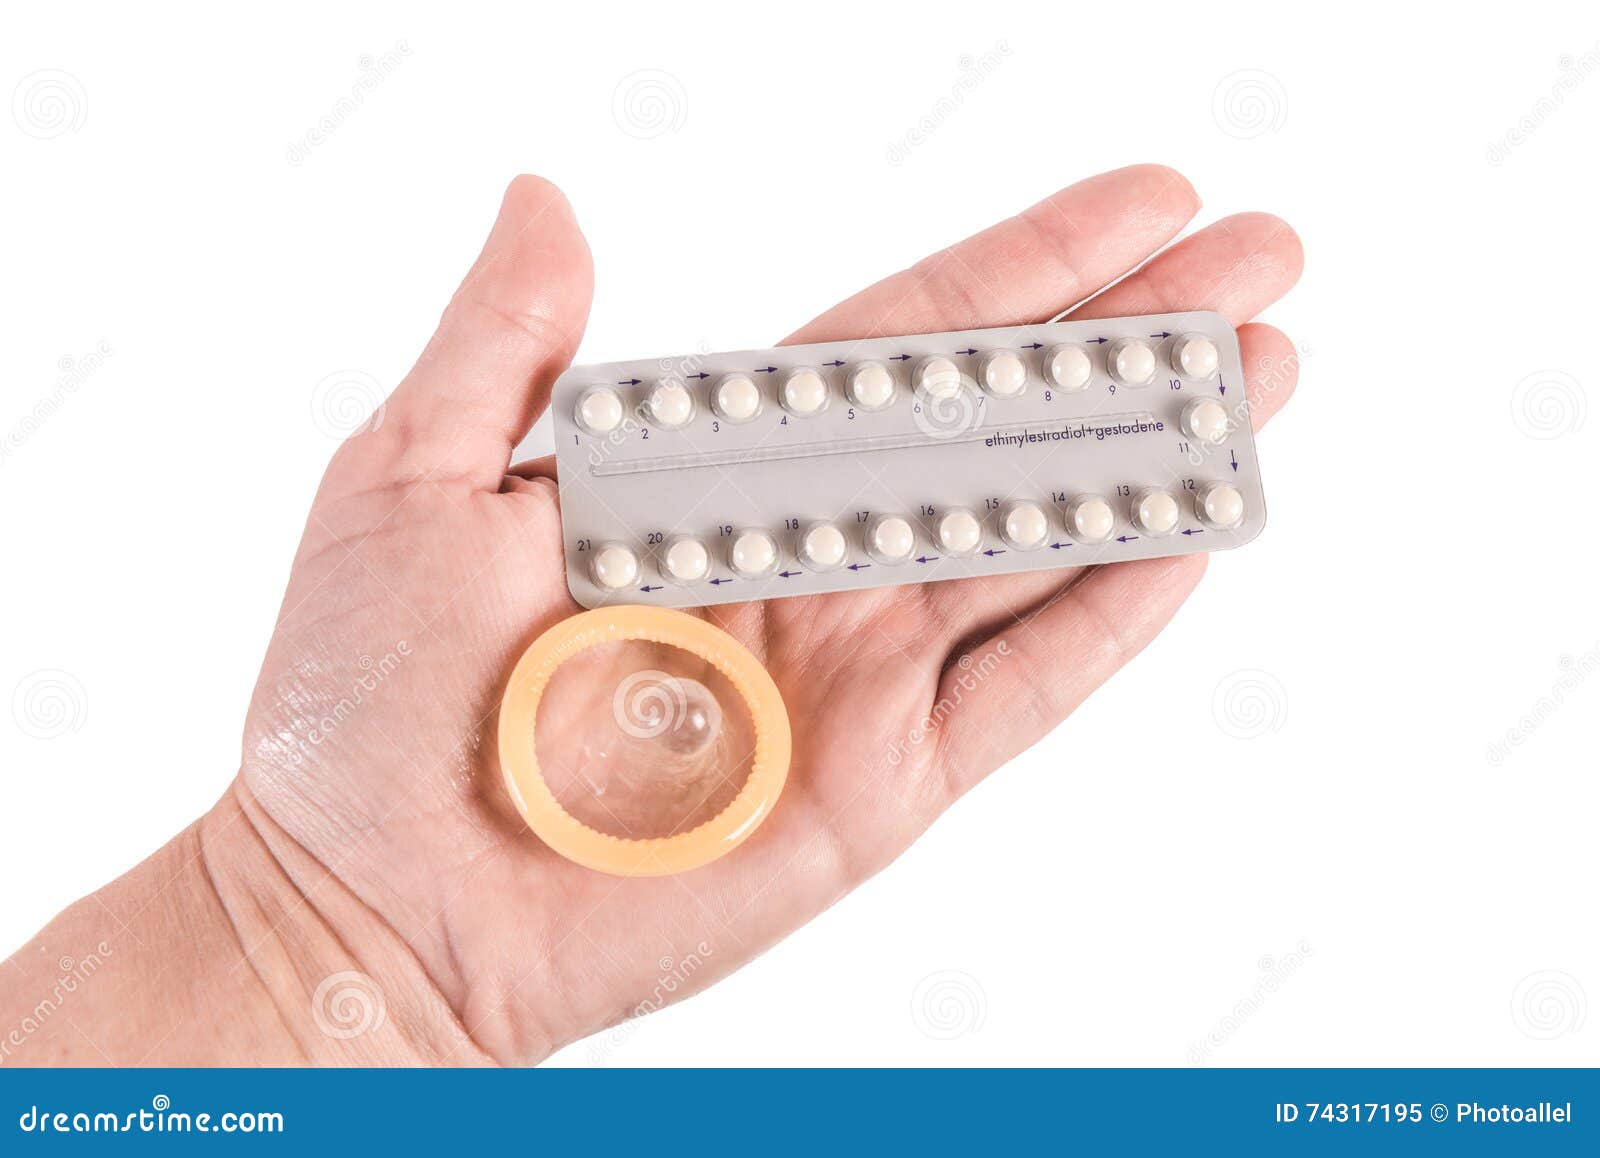 Противозачаточные средства после. Контрацептивы. Контрацептивы презервативы. Барьерные контрацептивы таблетки. Пероральные контрацептивы.